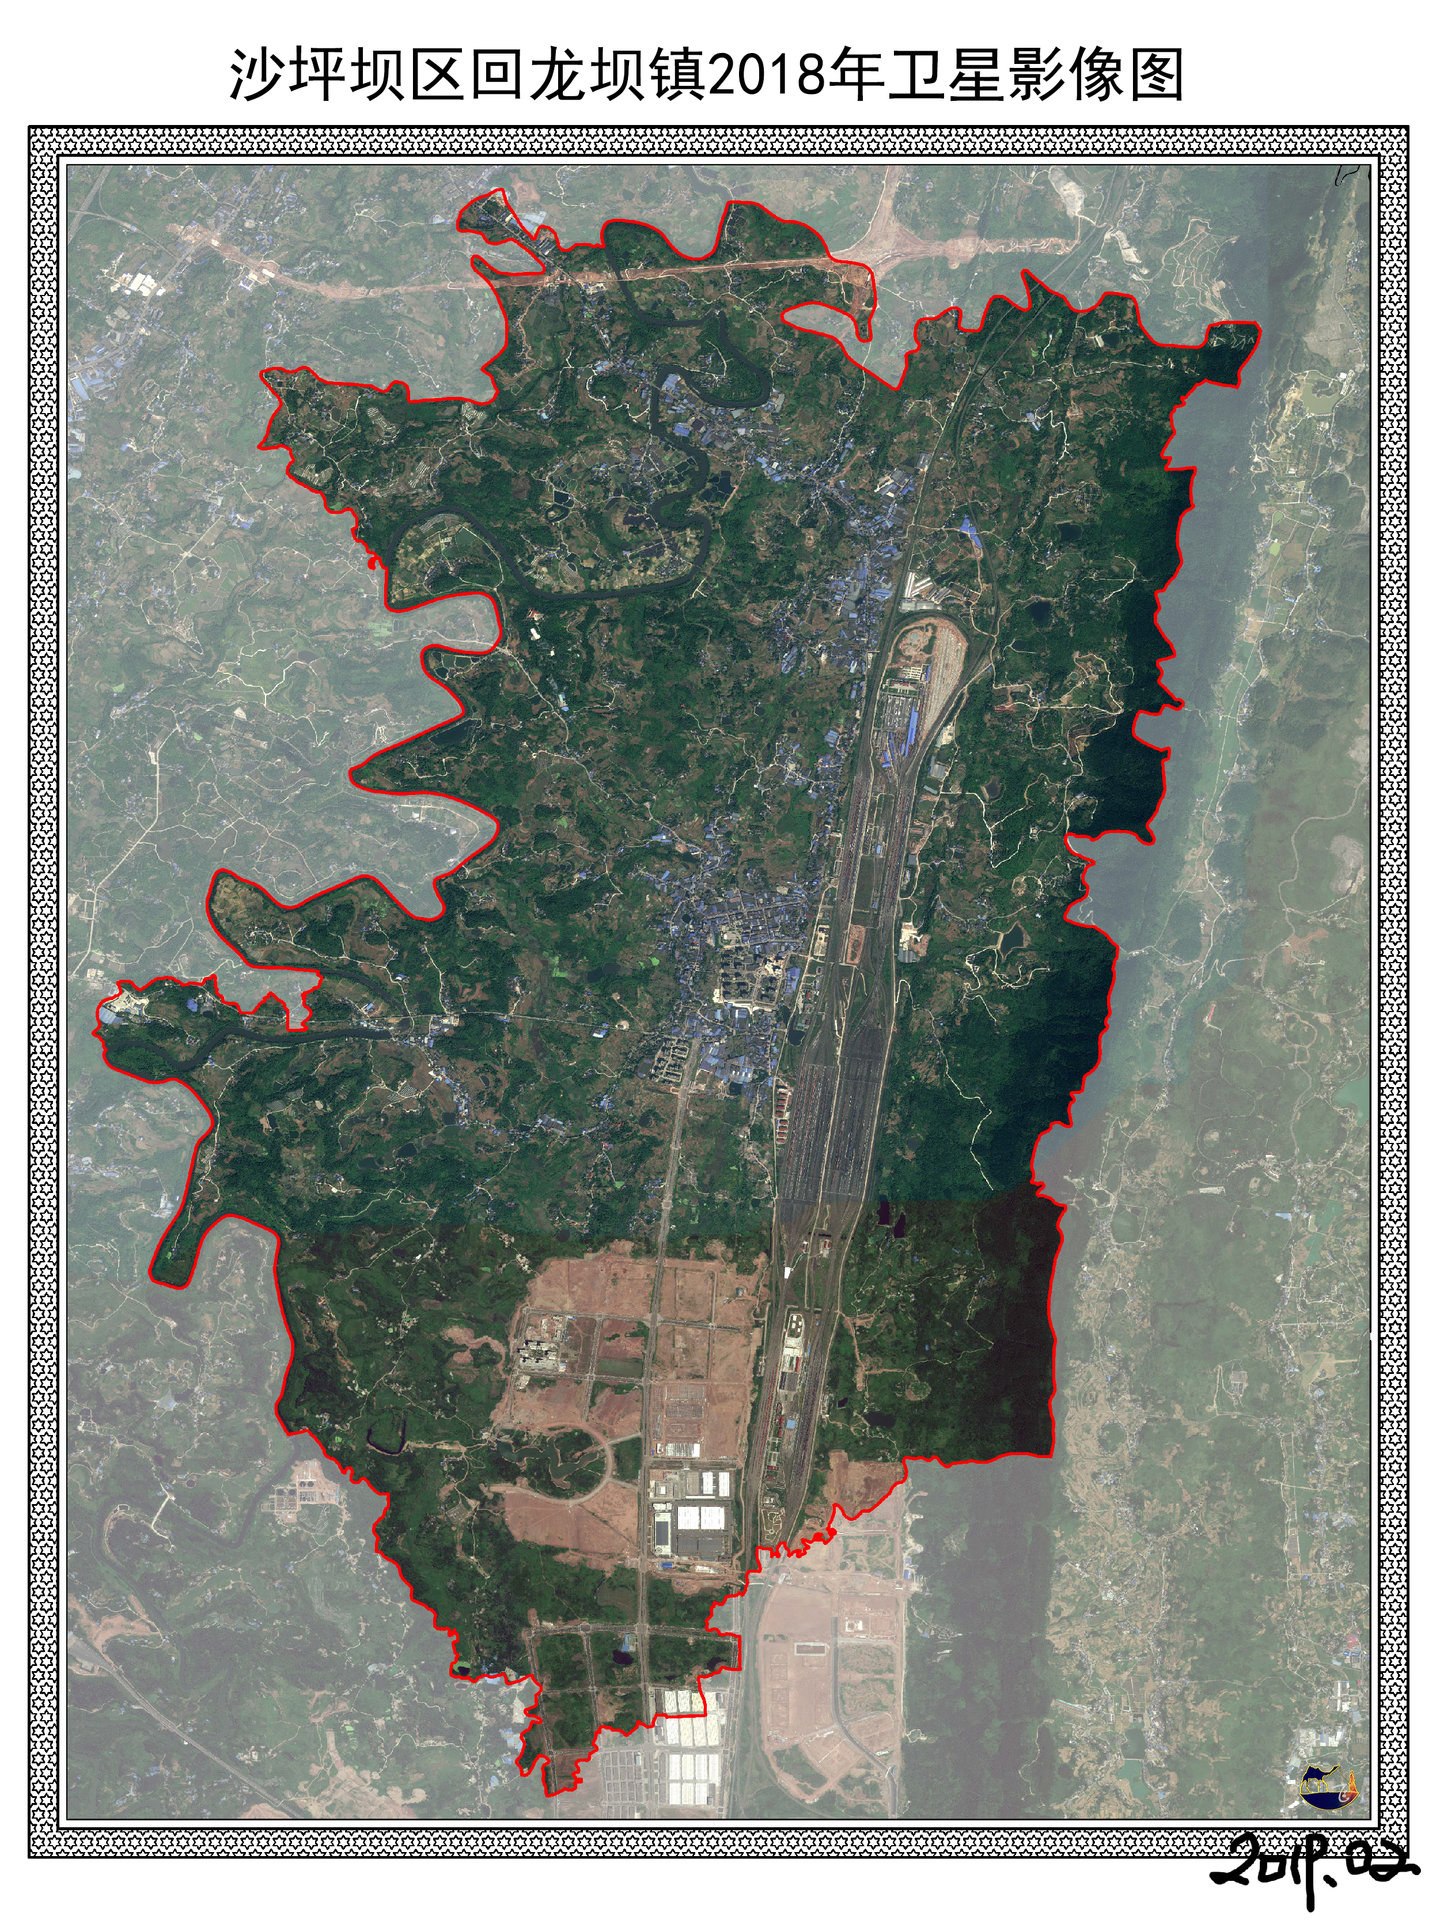 回龍壩鎮2018年衛星影像圖